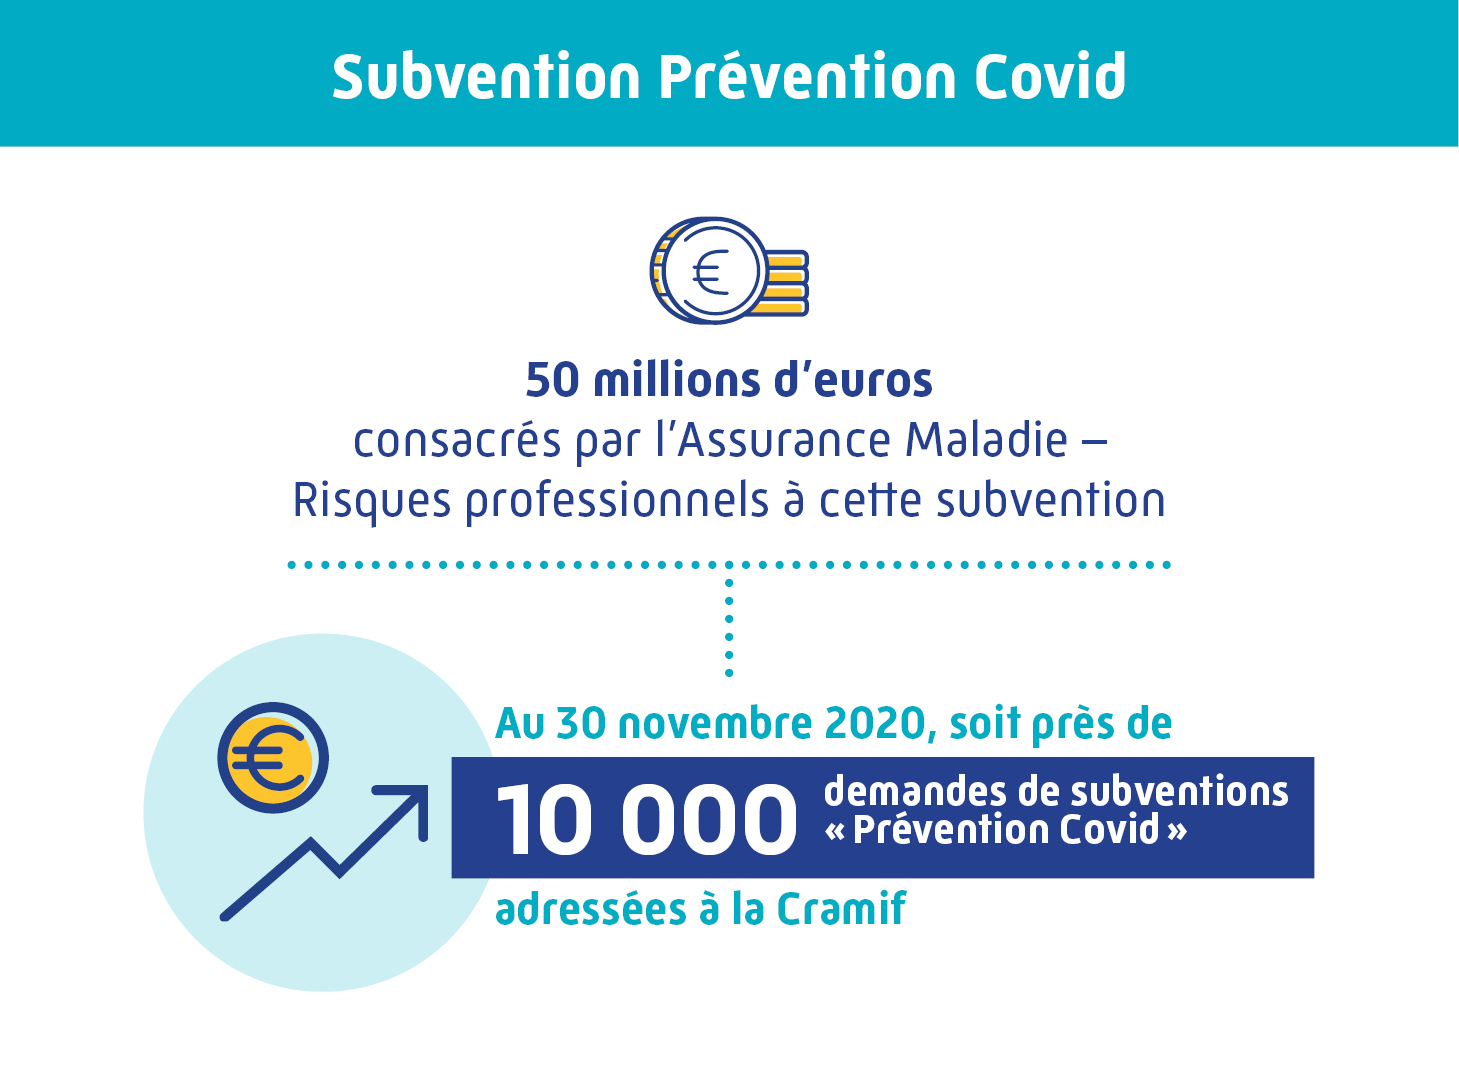 Infographie subvention prévention Covid : 50 millions d'euros, 10000 demandes